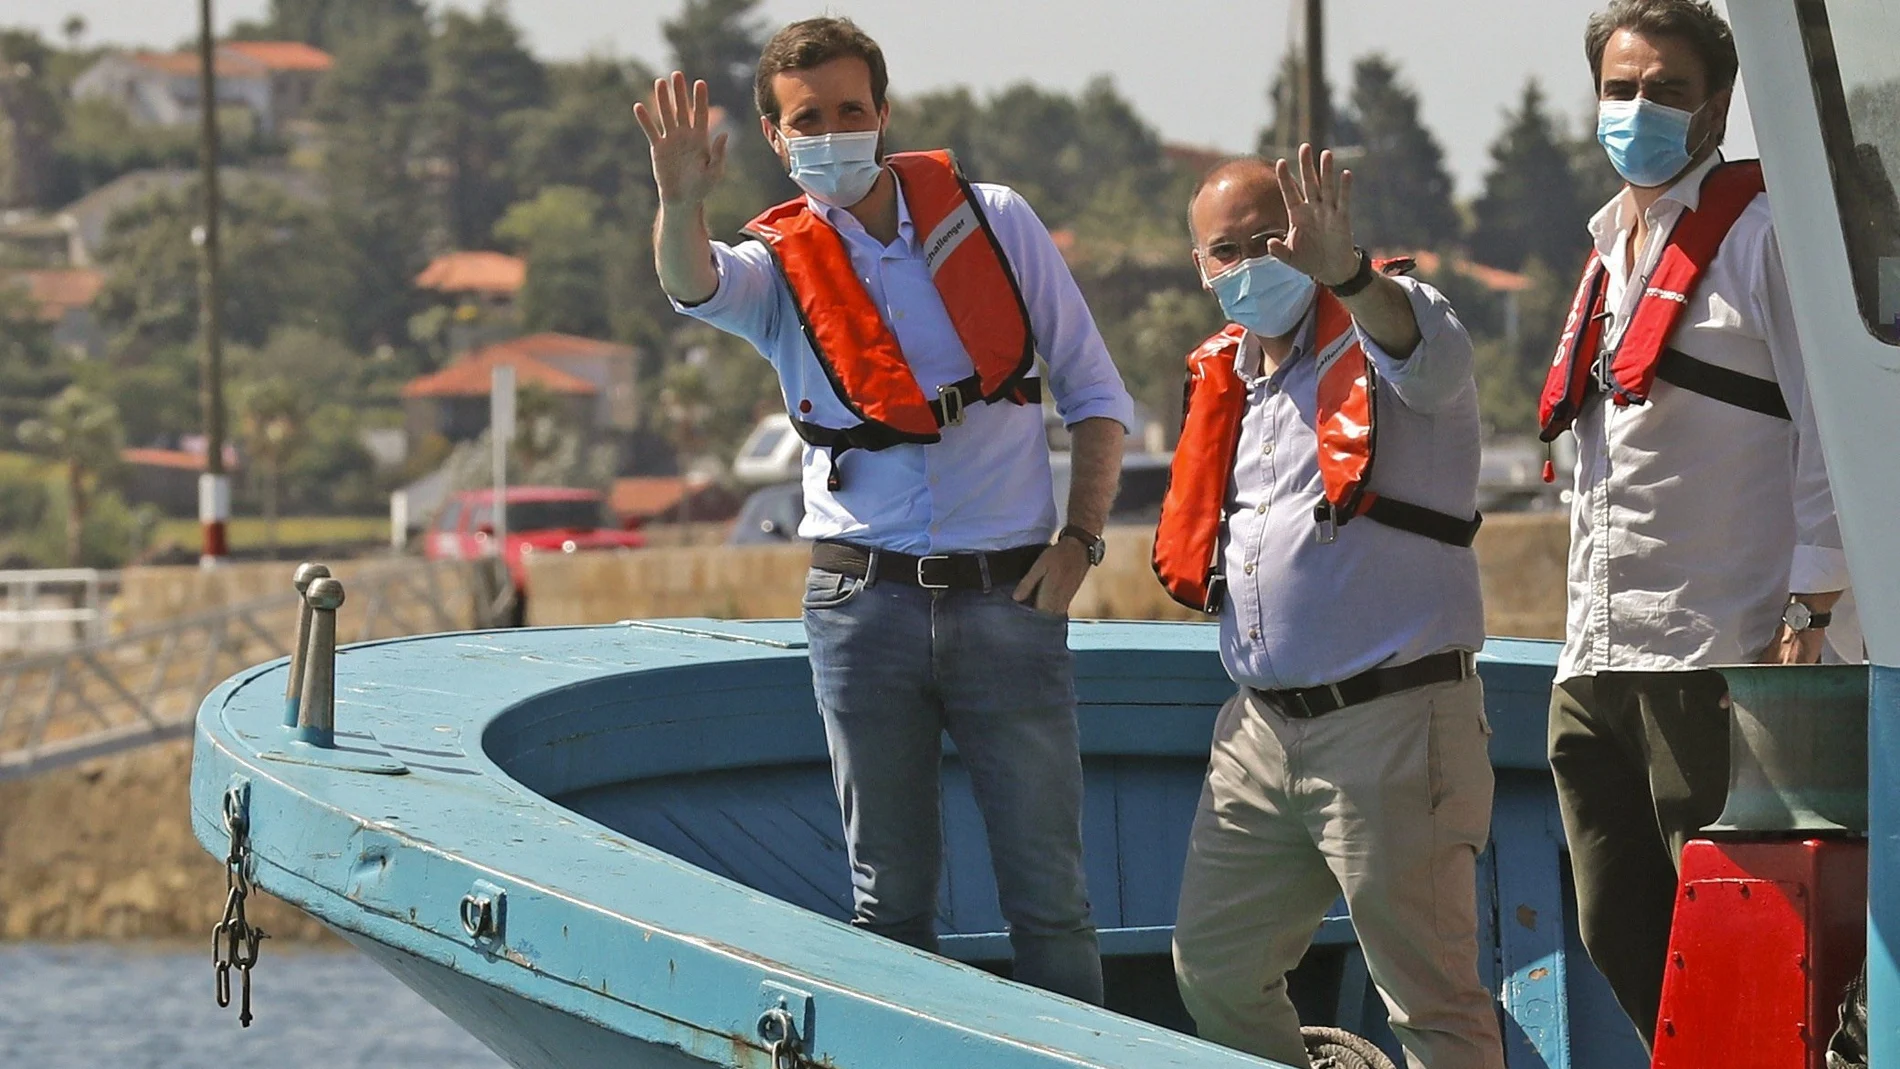 El presidente del Partido Popular, Pablo Casado, abordo de un barco "bateeiro" en la Ría de Arousa